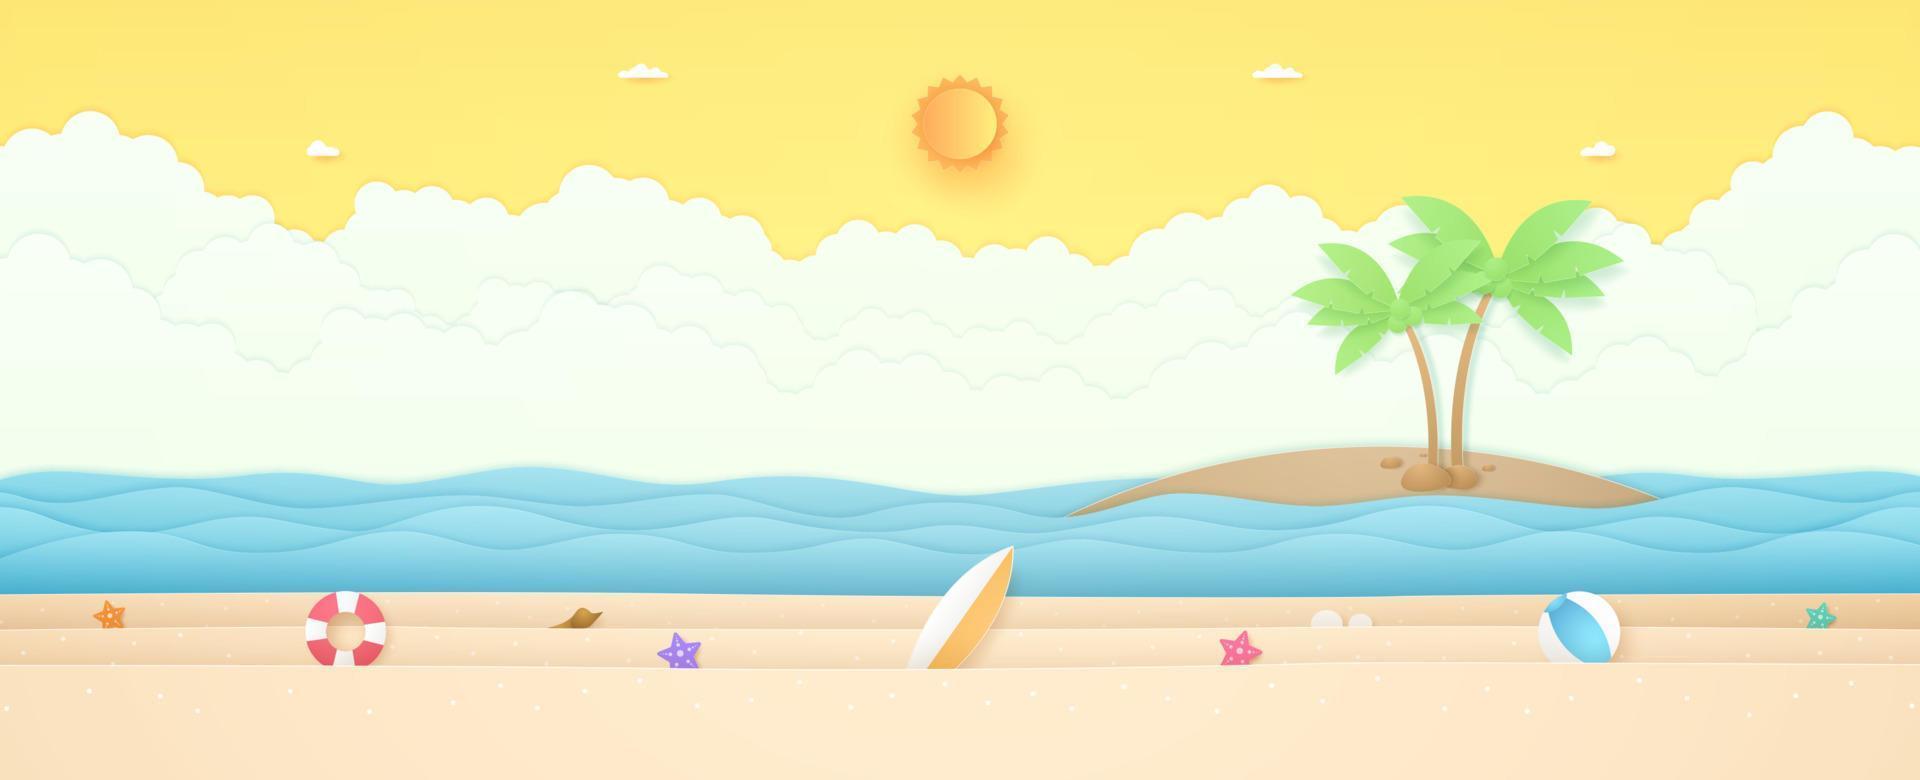 Sommerzeit, Seelandschaft, Landschaft, Seestern, Ballon und Sommerzeug am Strand mit welligem Meer und Kokospalme auf der Insel, strahlender Sonne und sonnigem Himmel, Papierkunststil vektor